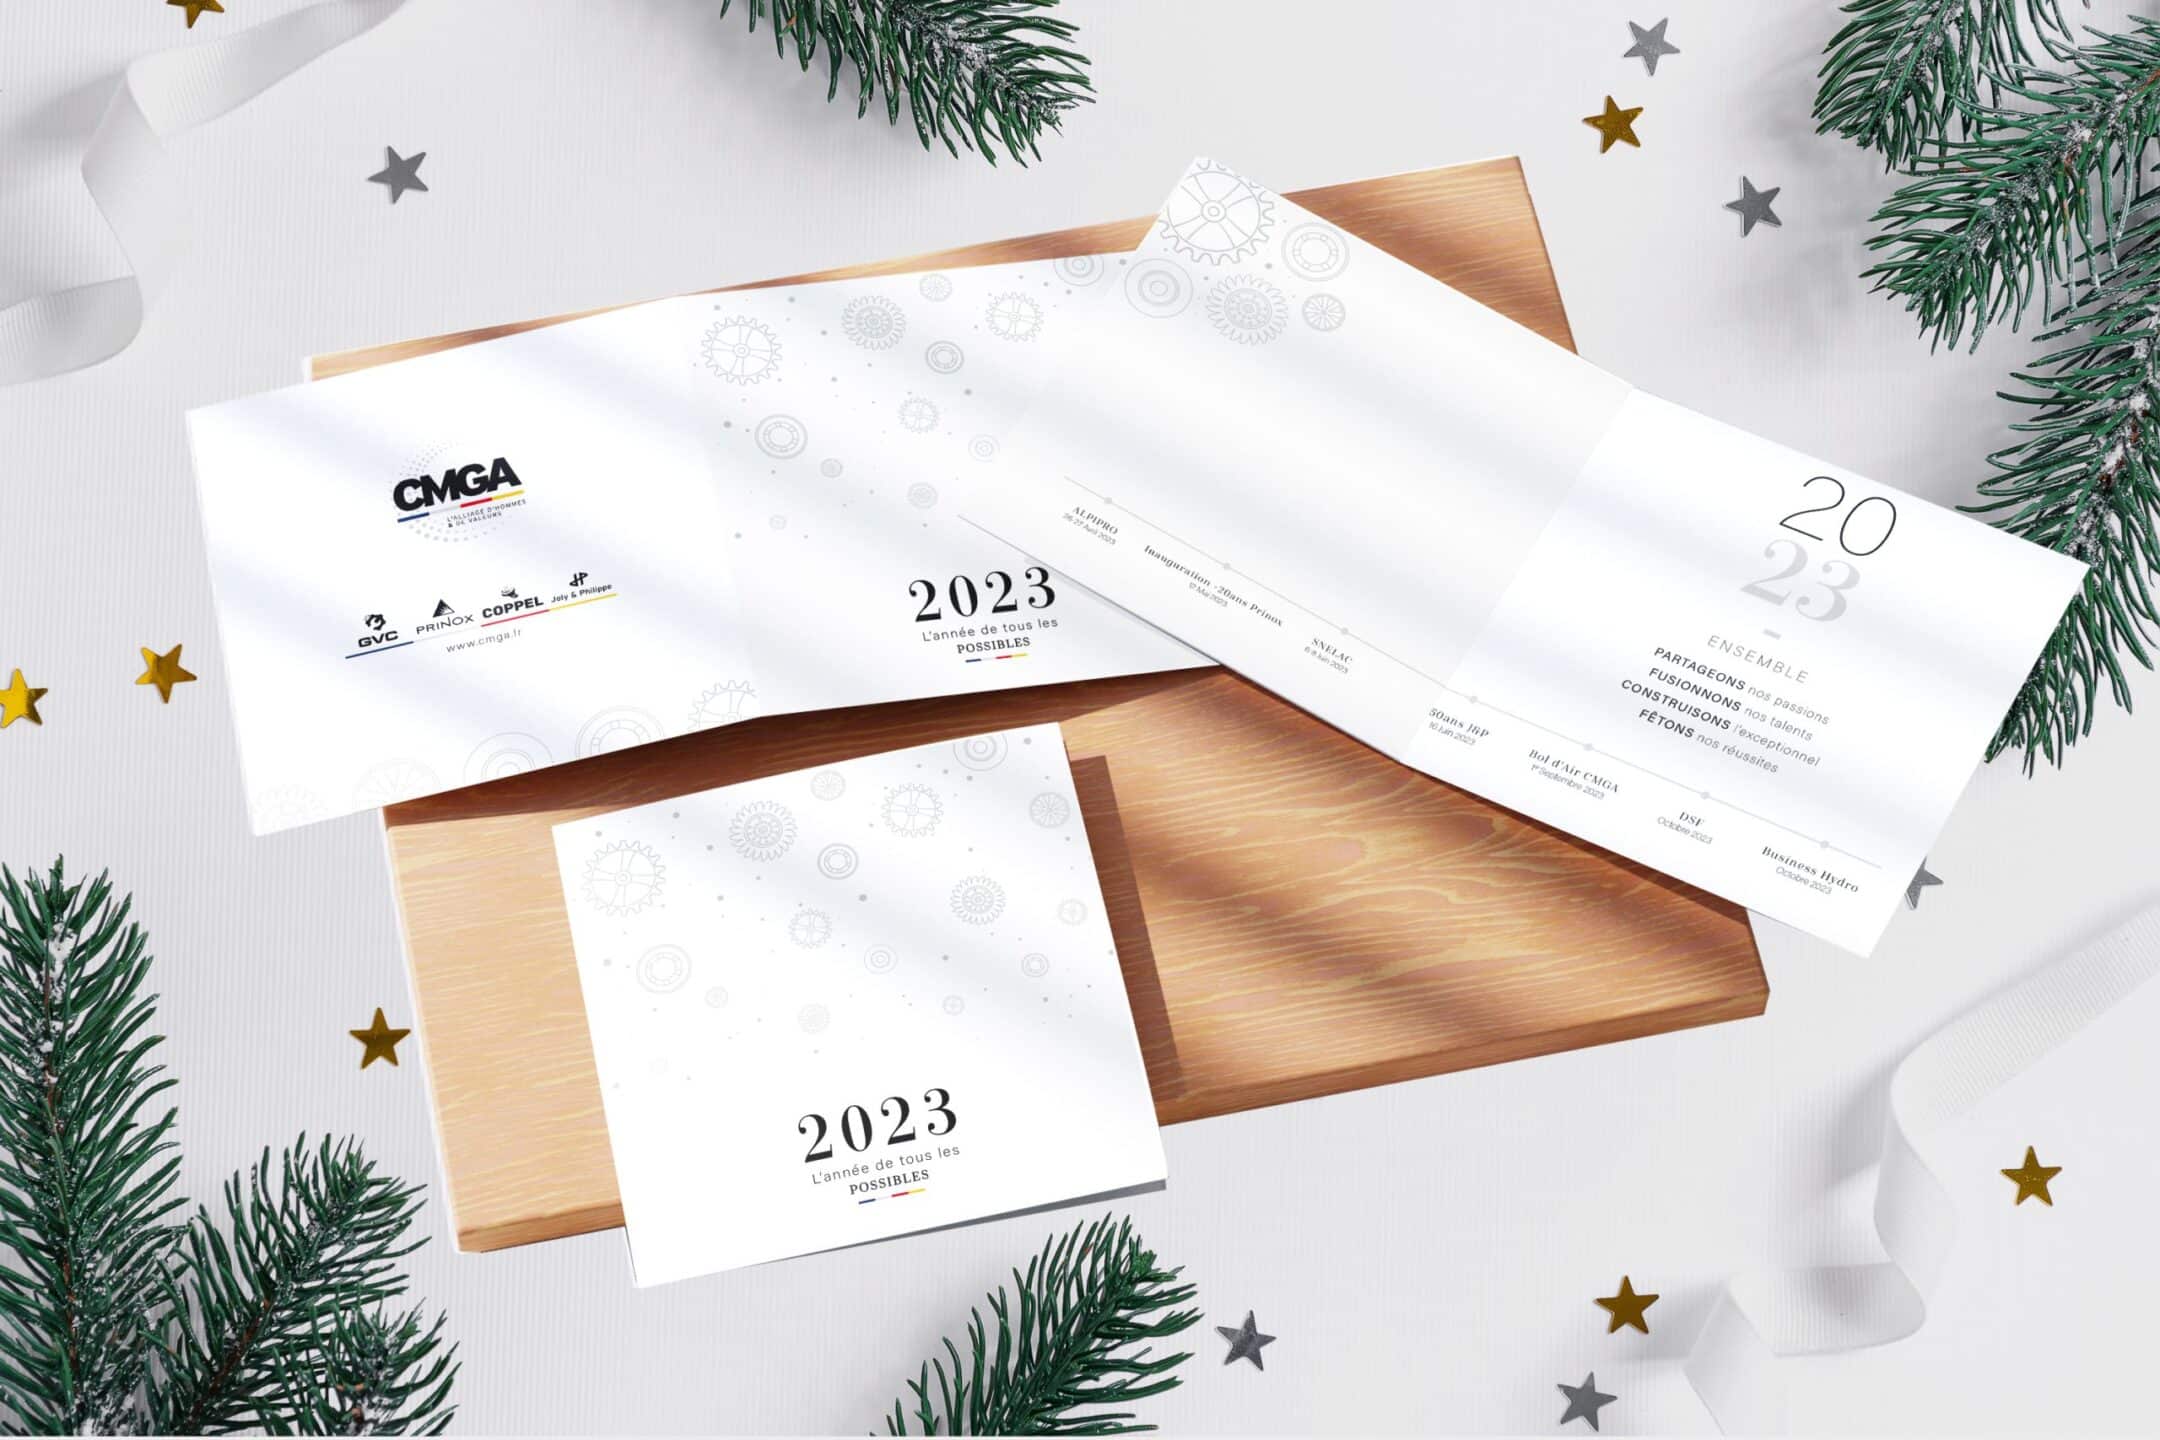 Création de cartes de vœux pour la société CMGA